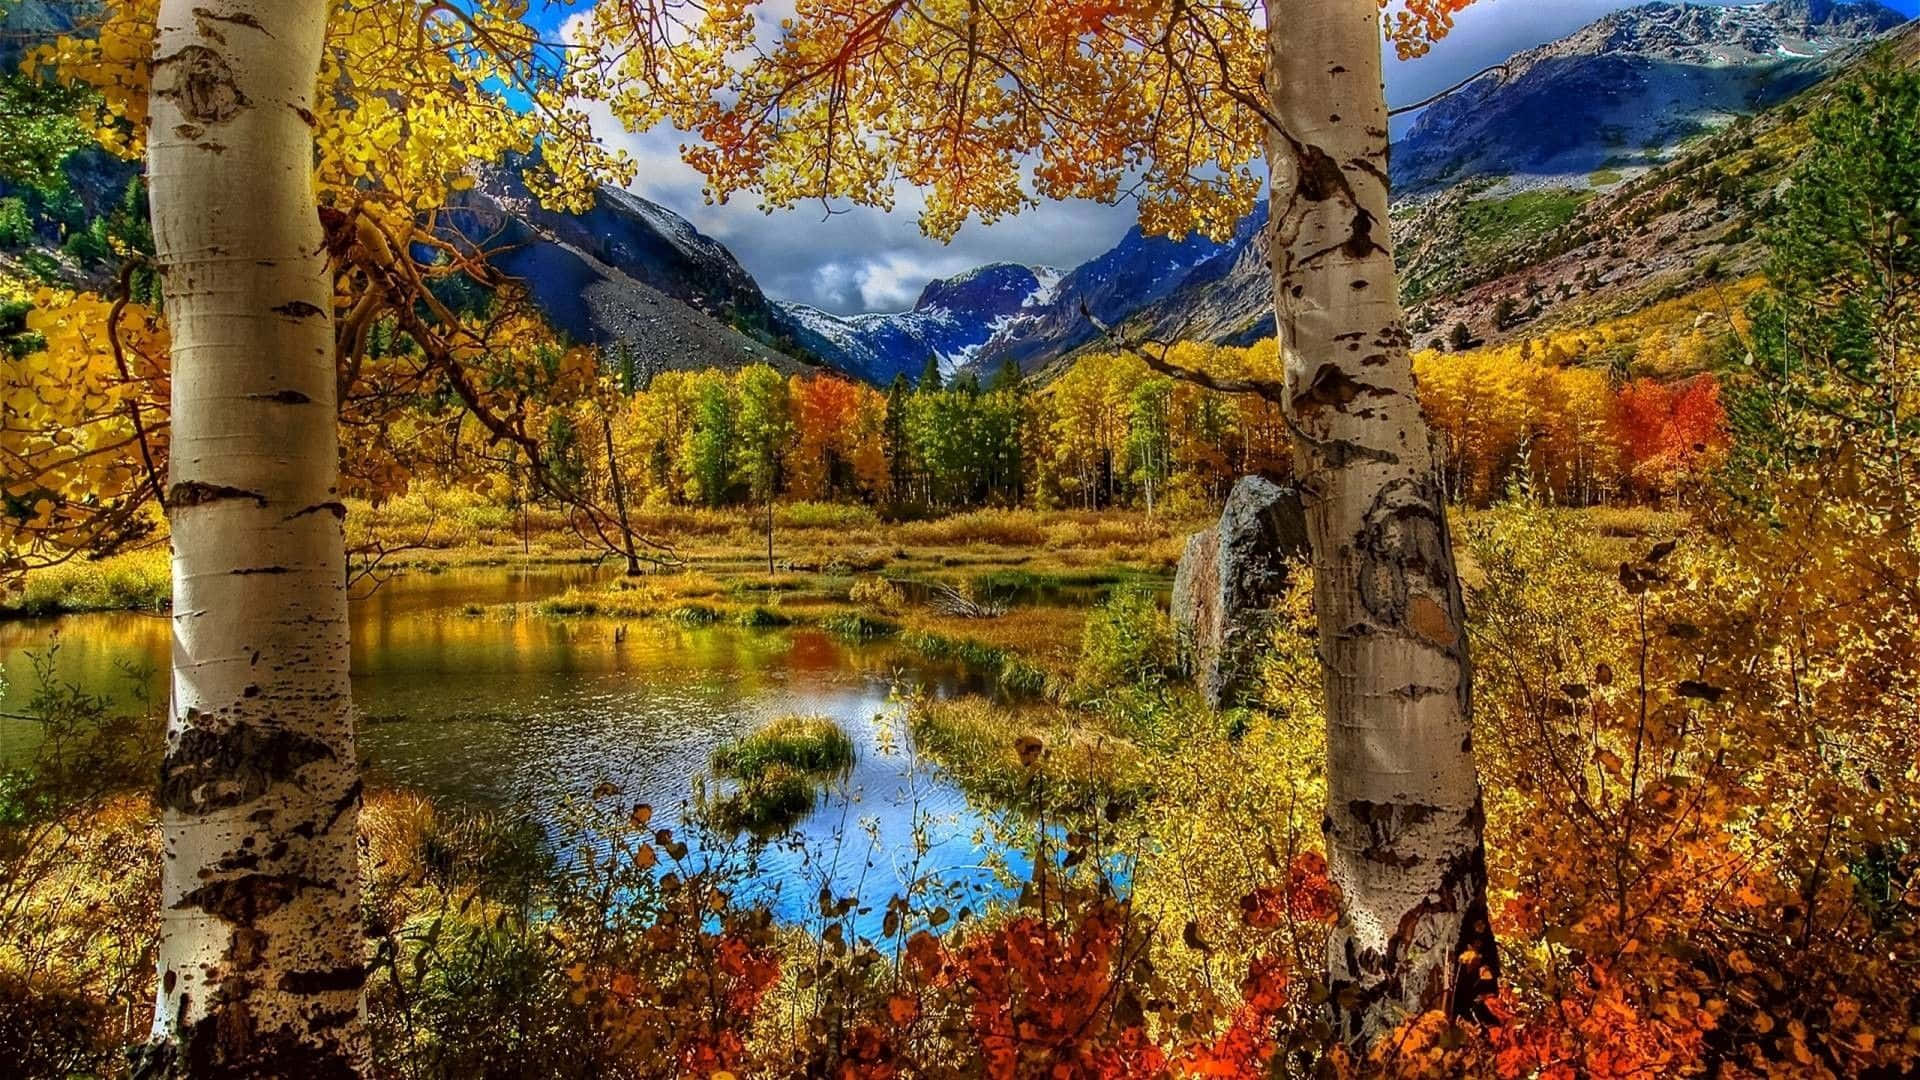 Caption: Enchanting Autumn Forest Path